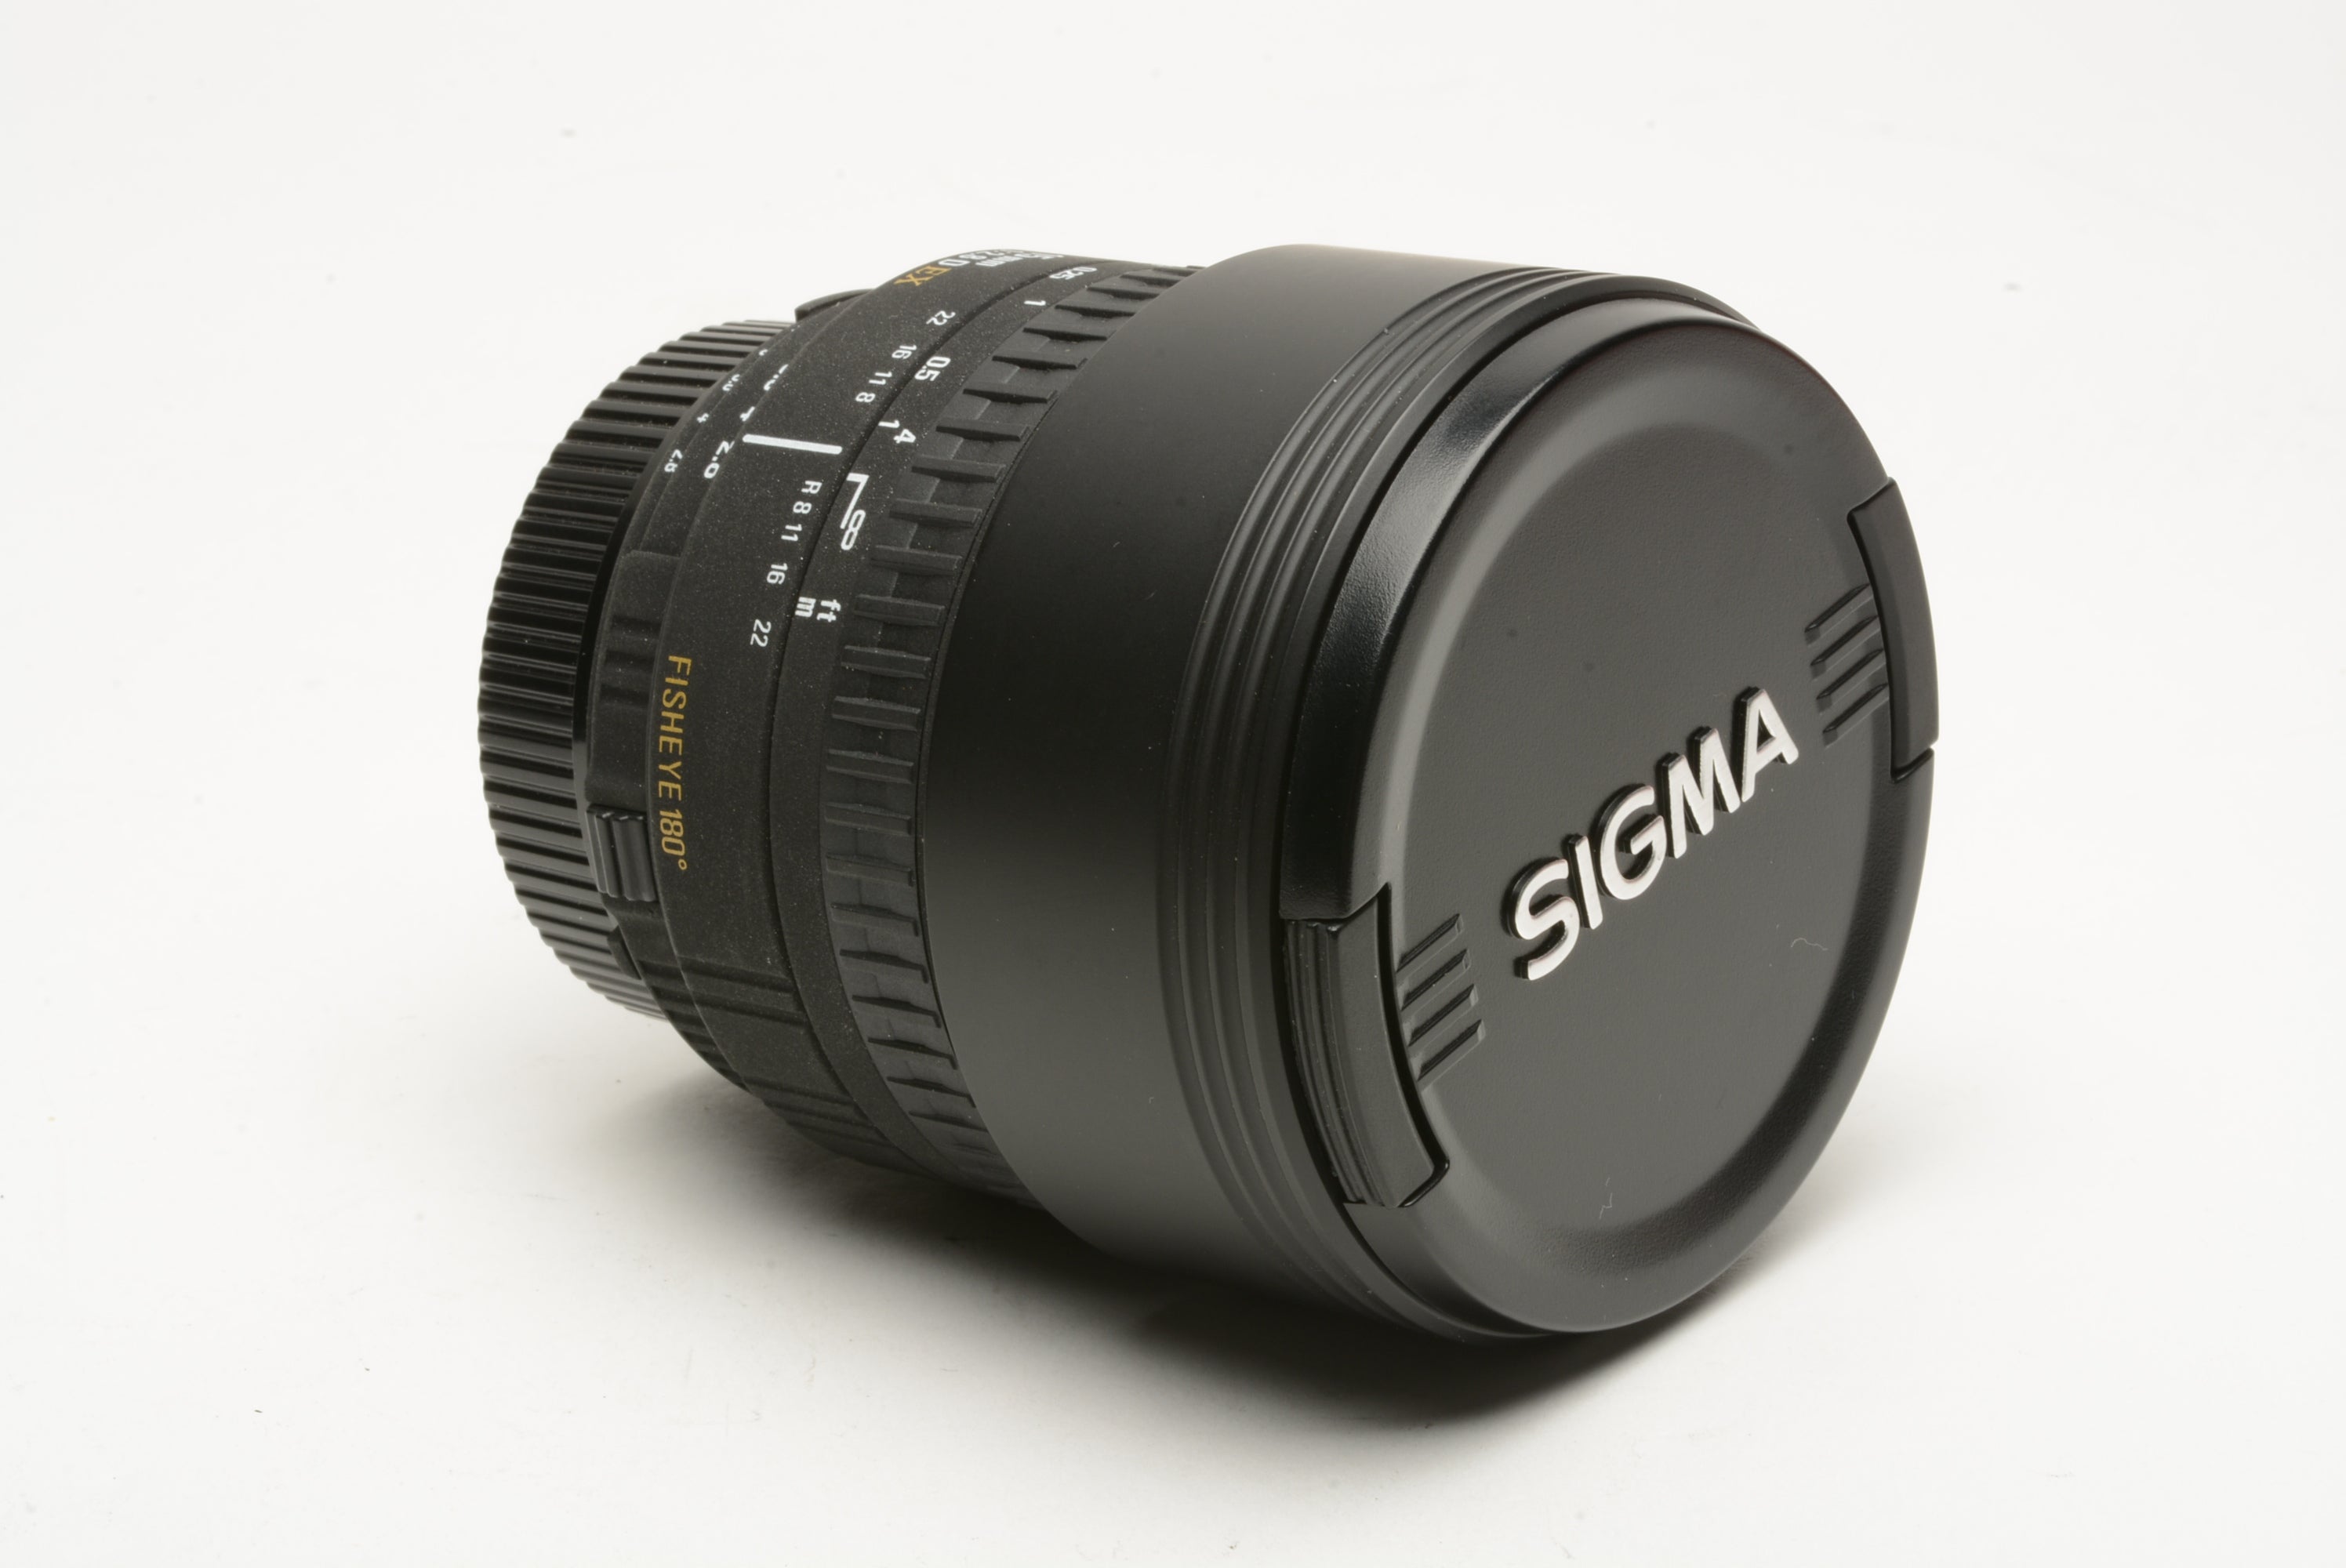 Sigma 15mm f2.8D EX fisheye 180 degrees wide lens Nikon AF, hood